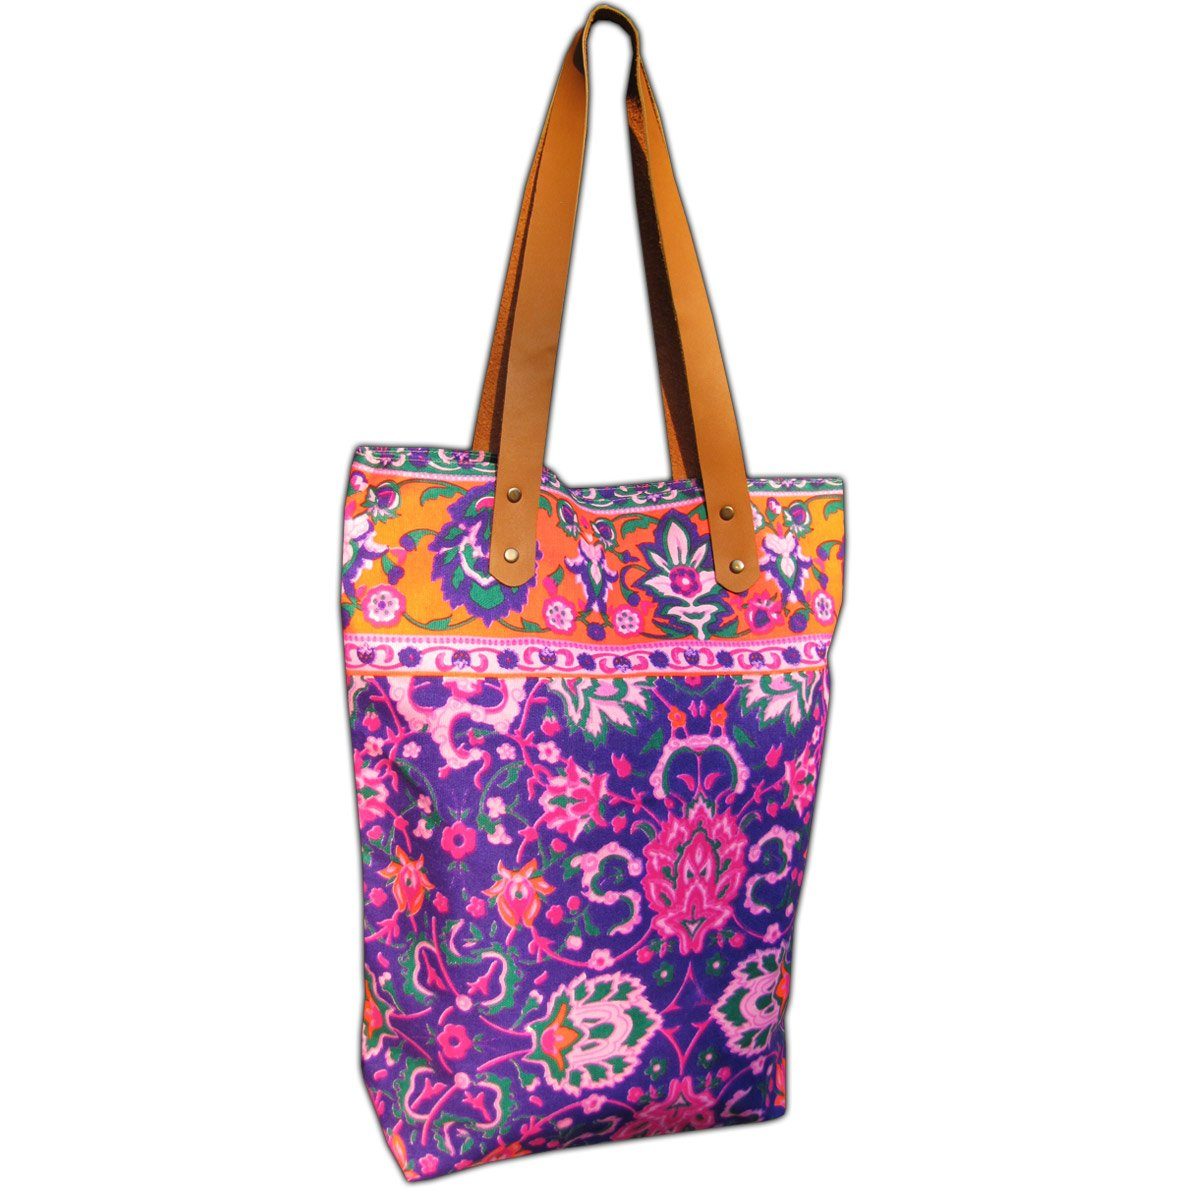 PANASIAM Freizeittasche Neonbunte Schultertasche aus festem Canvas auch als Einkaufstasche, Strandtasche oder Wickeltasche ideal Henkel aus veganem Kunstleder